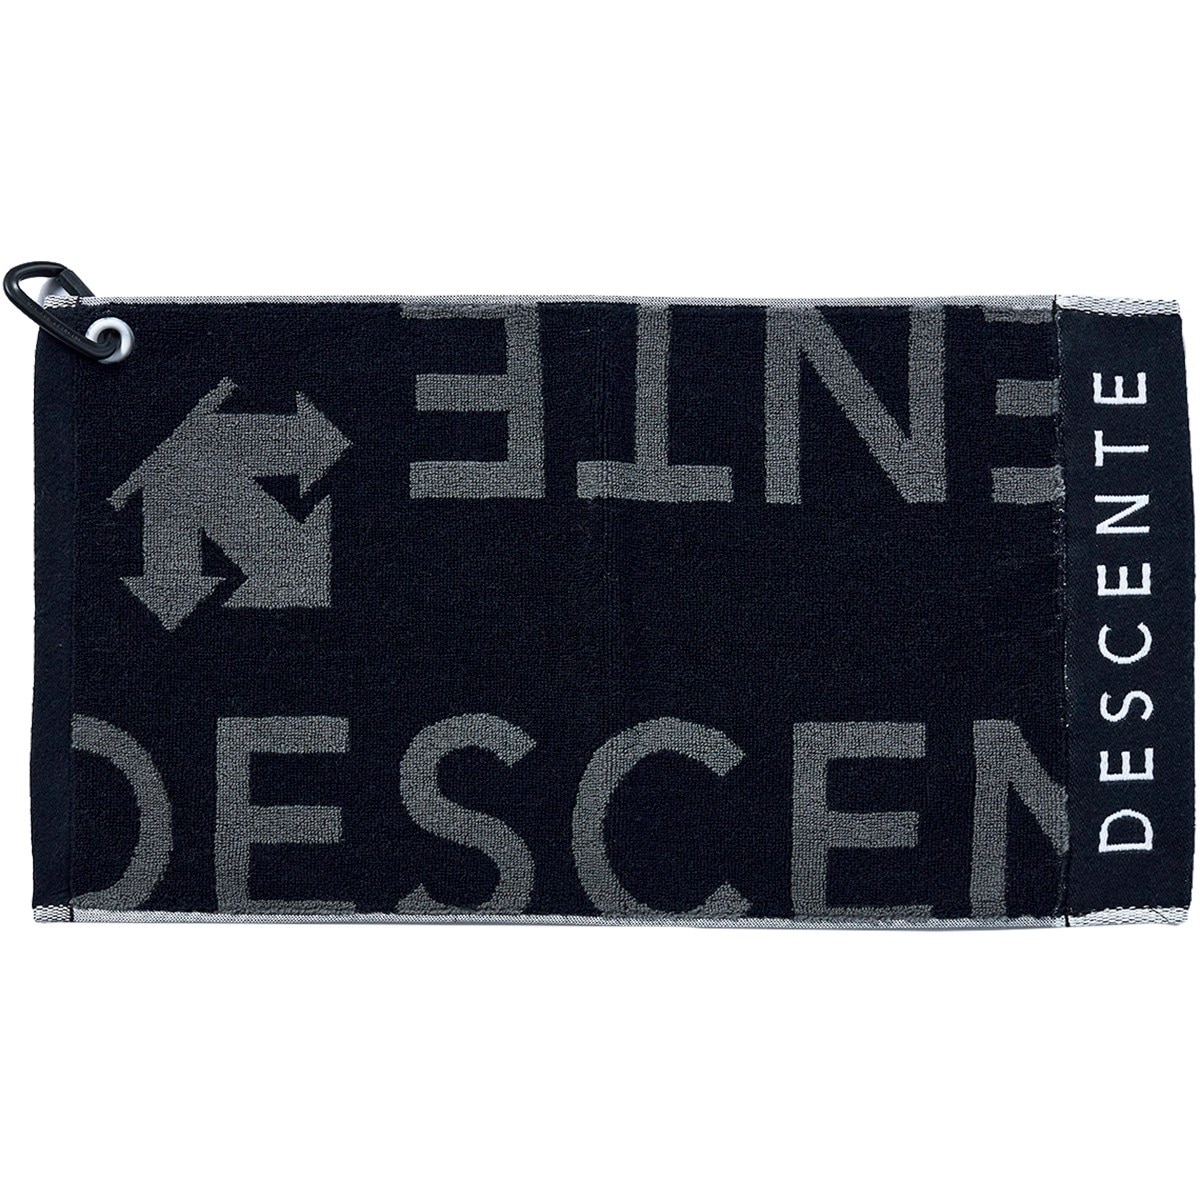 今治タオルデザインジャカードマルチフック付き コンパクトタオル(タオル)|DESCENTE